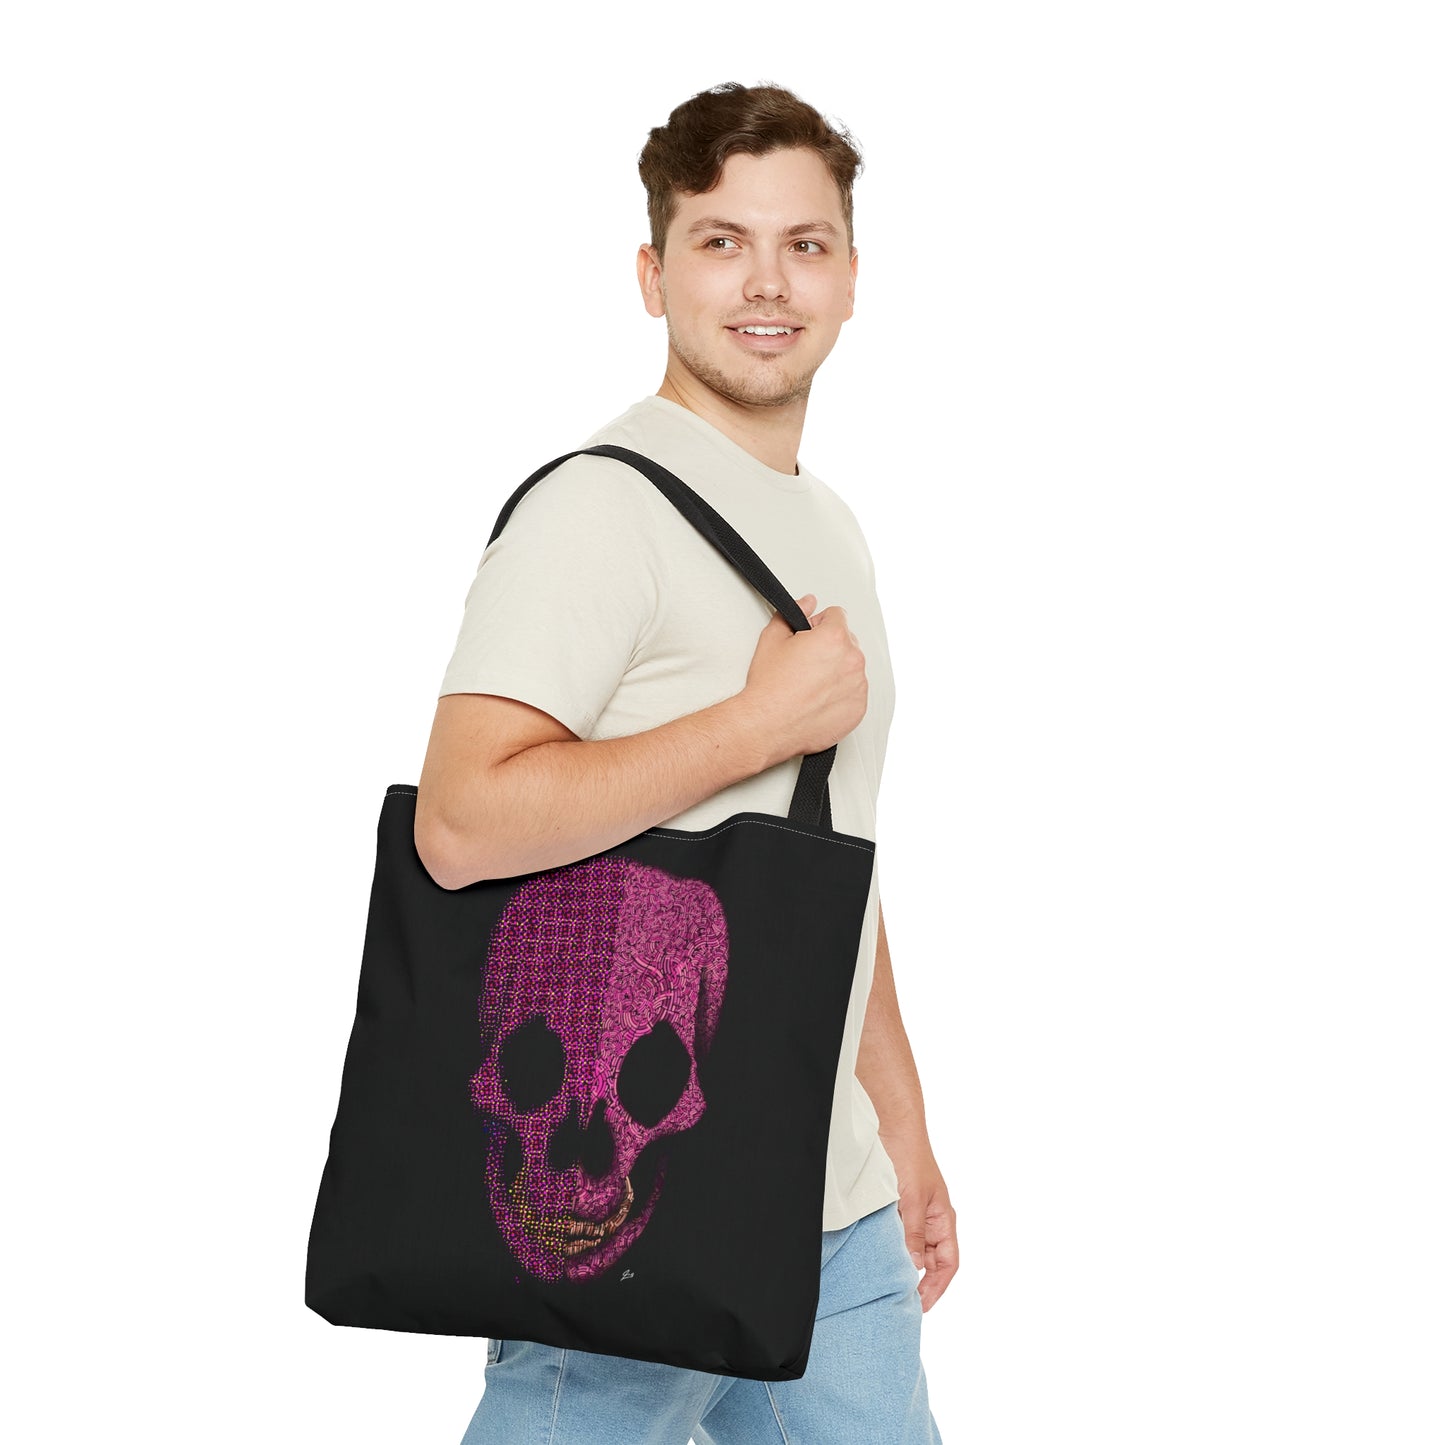 Pink Skull Designed Tote Bag (AOP)